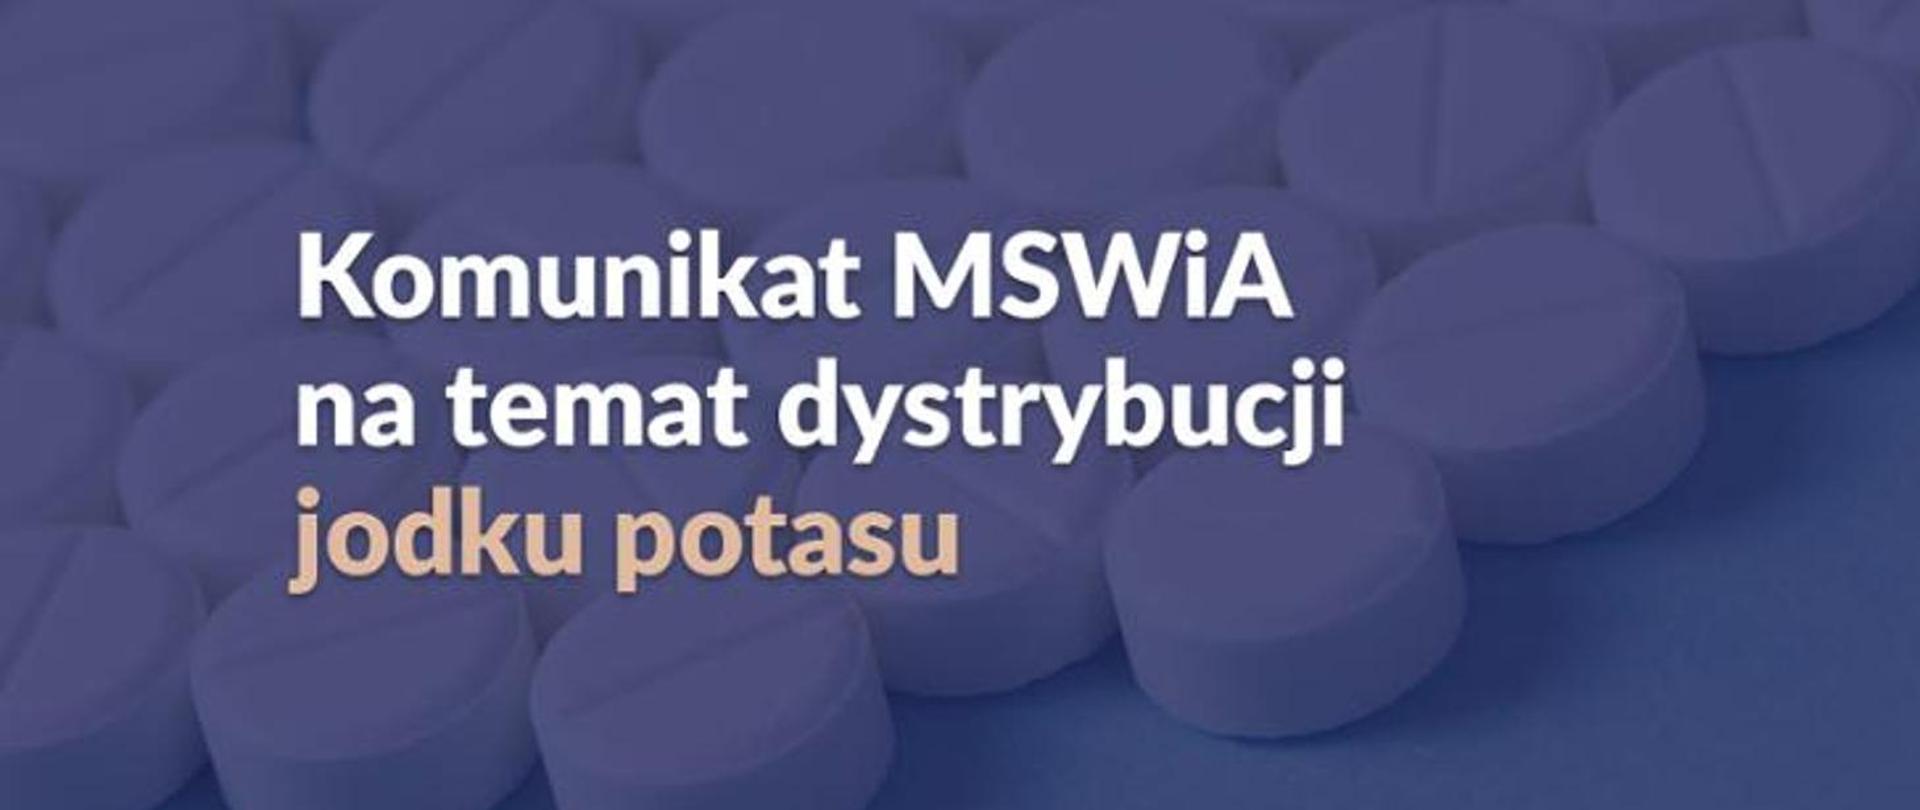 Aktualny komunikat MSWiA na temat dystrybucji jodku potasu